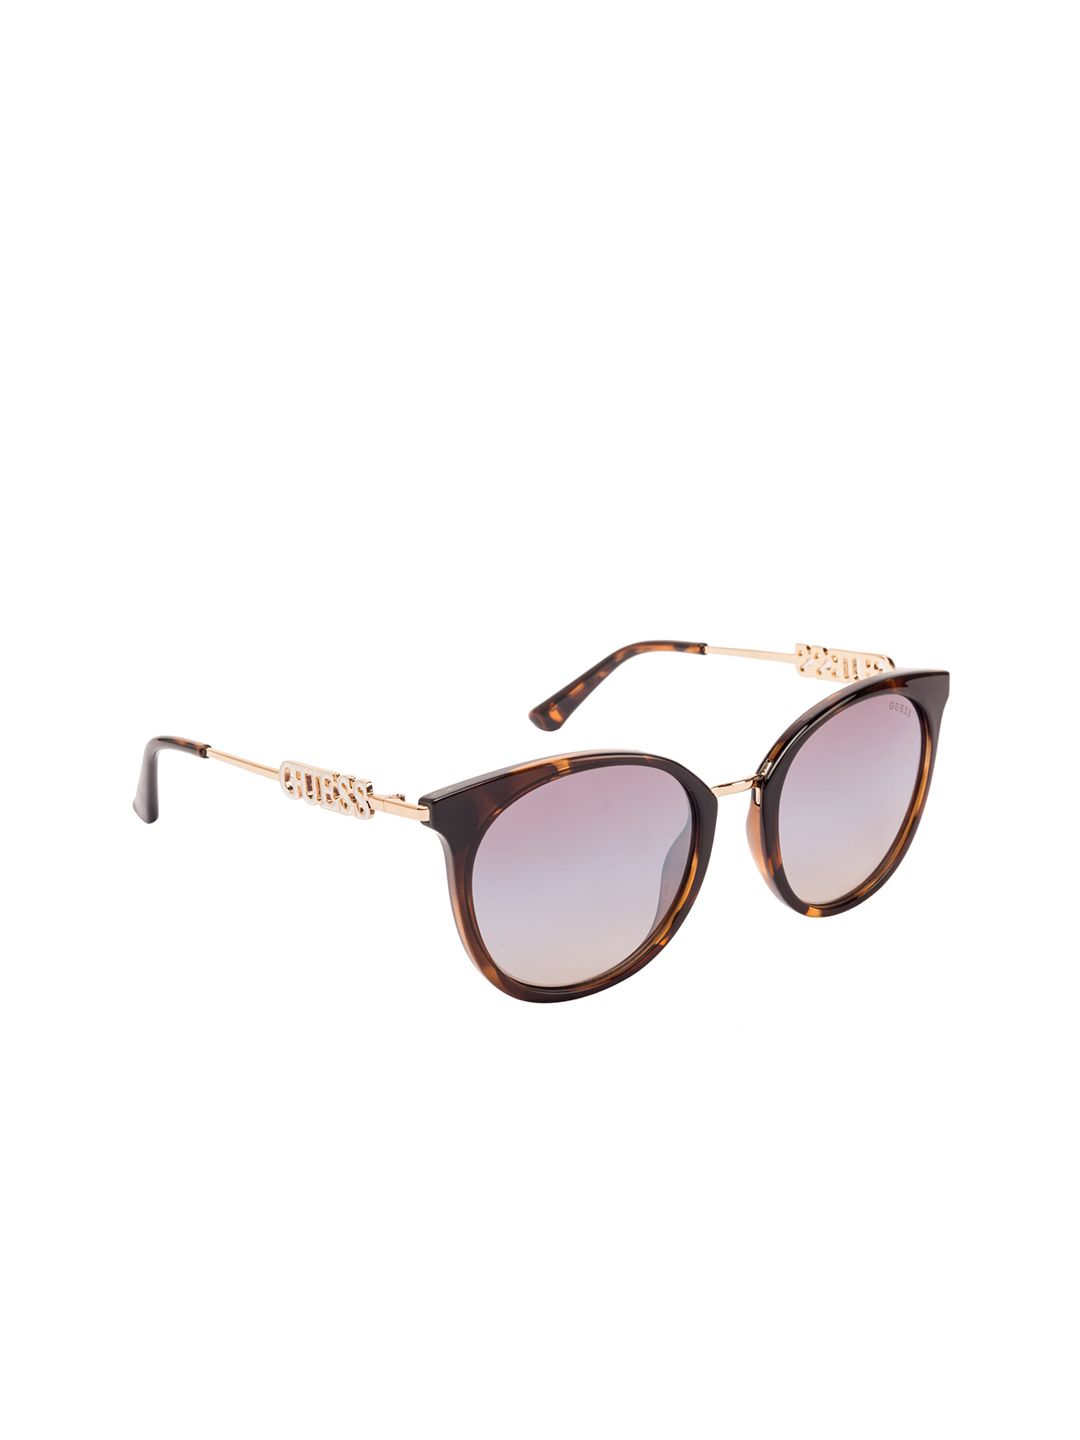 GUESS Women Cateye Sunglasses GU7645 52 52G Price in India